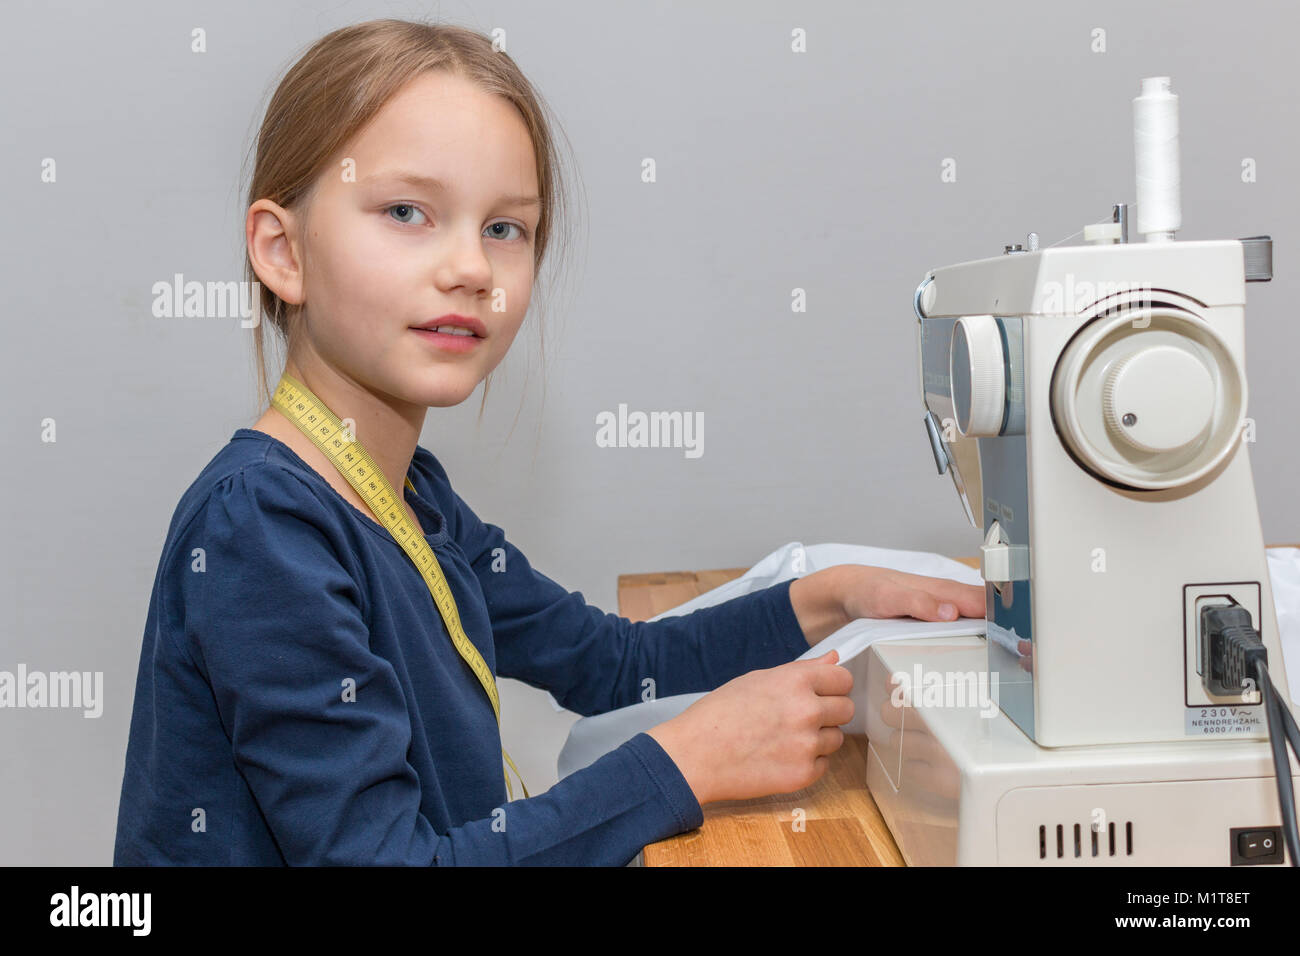 Porträt eines 8 Jahre alten Mädchen nähen eine rosa-weiß gestreiften Tuch mit einer Nähmaschine, lächelnd Stockfoto